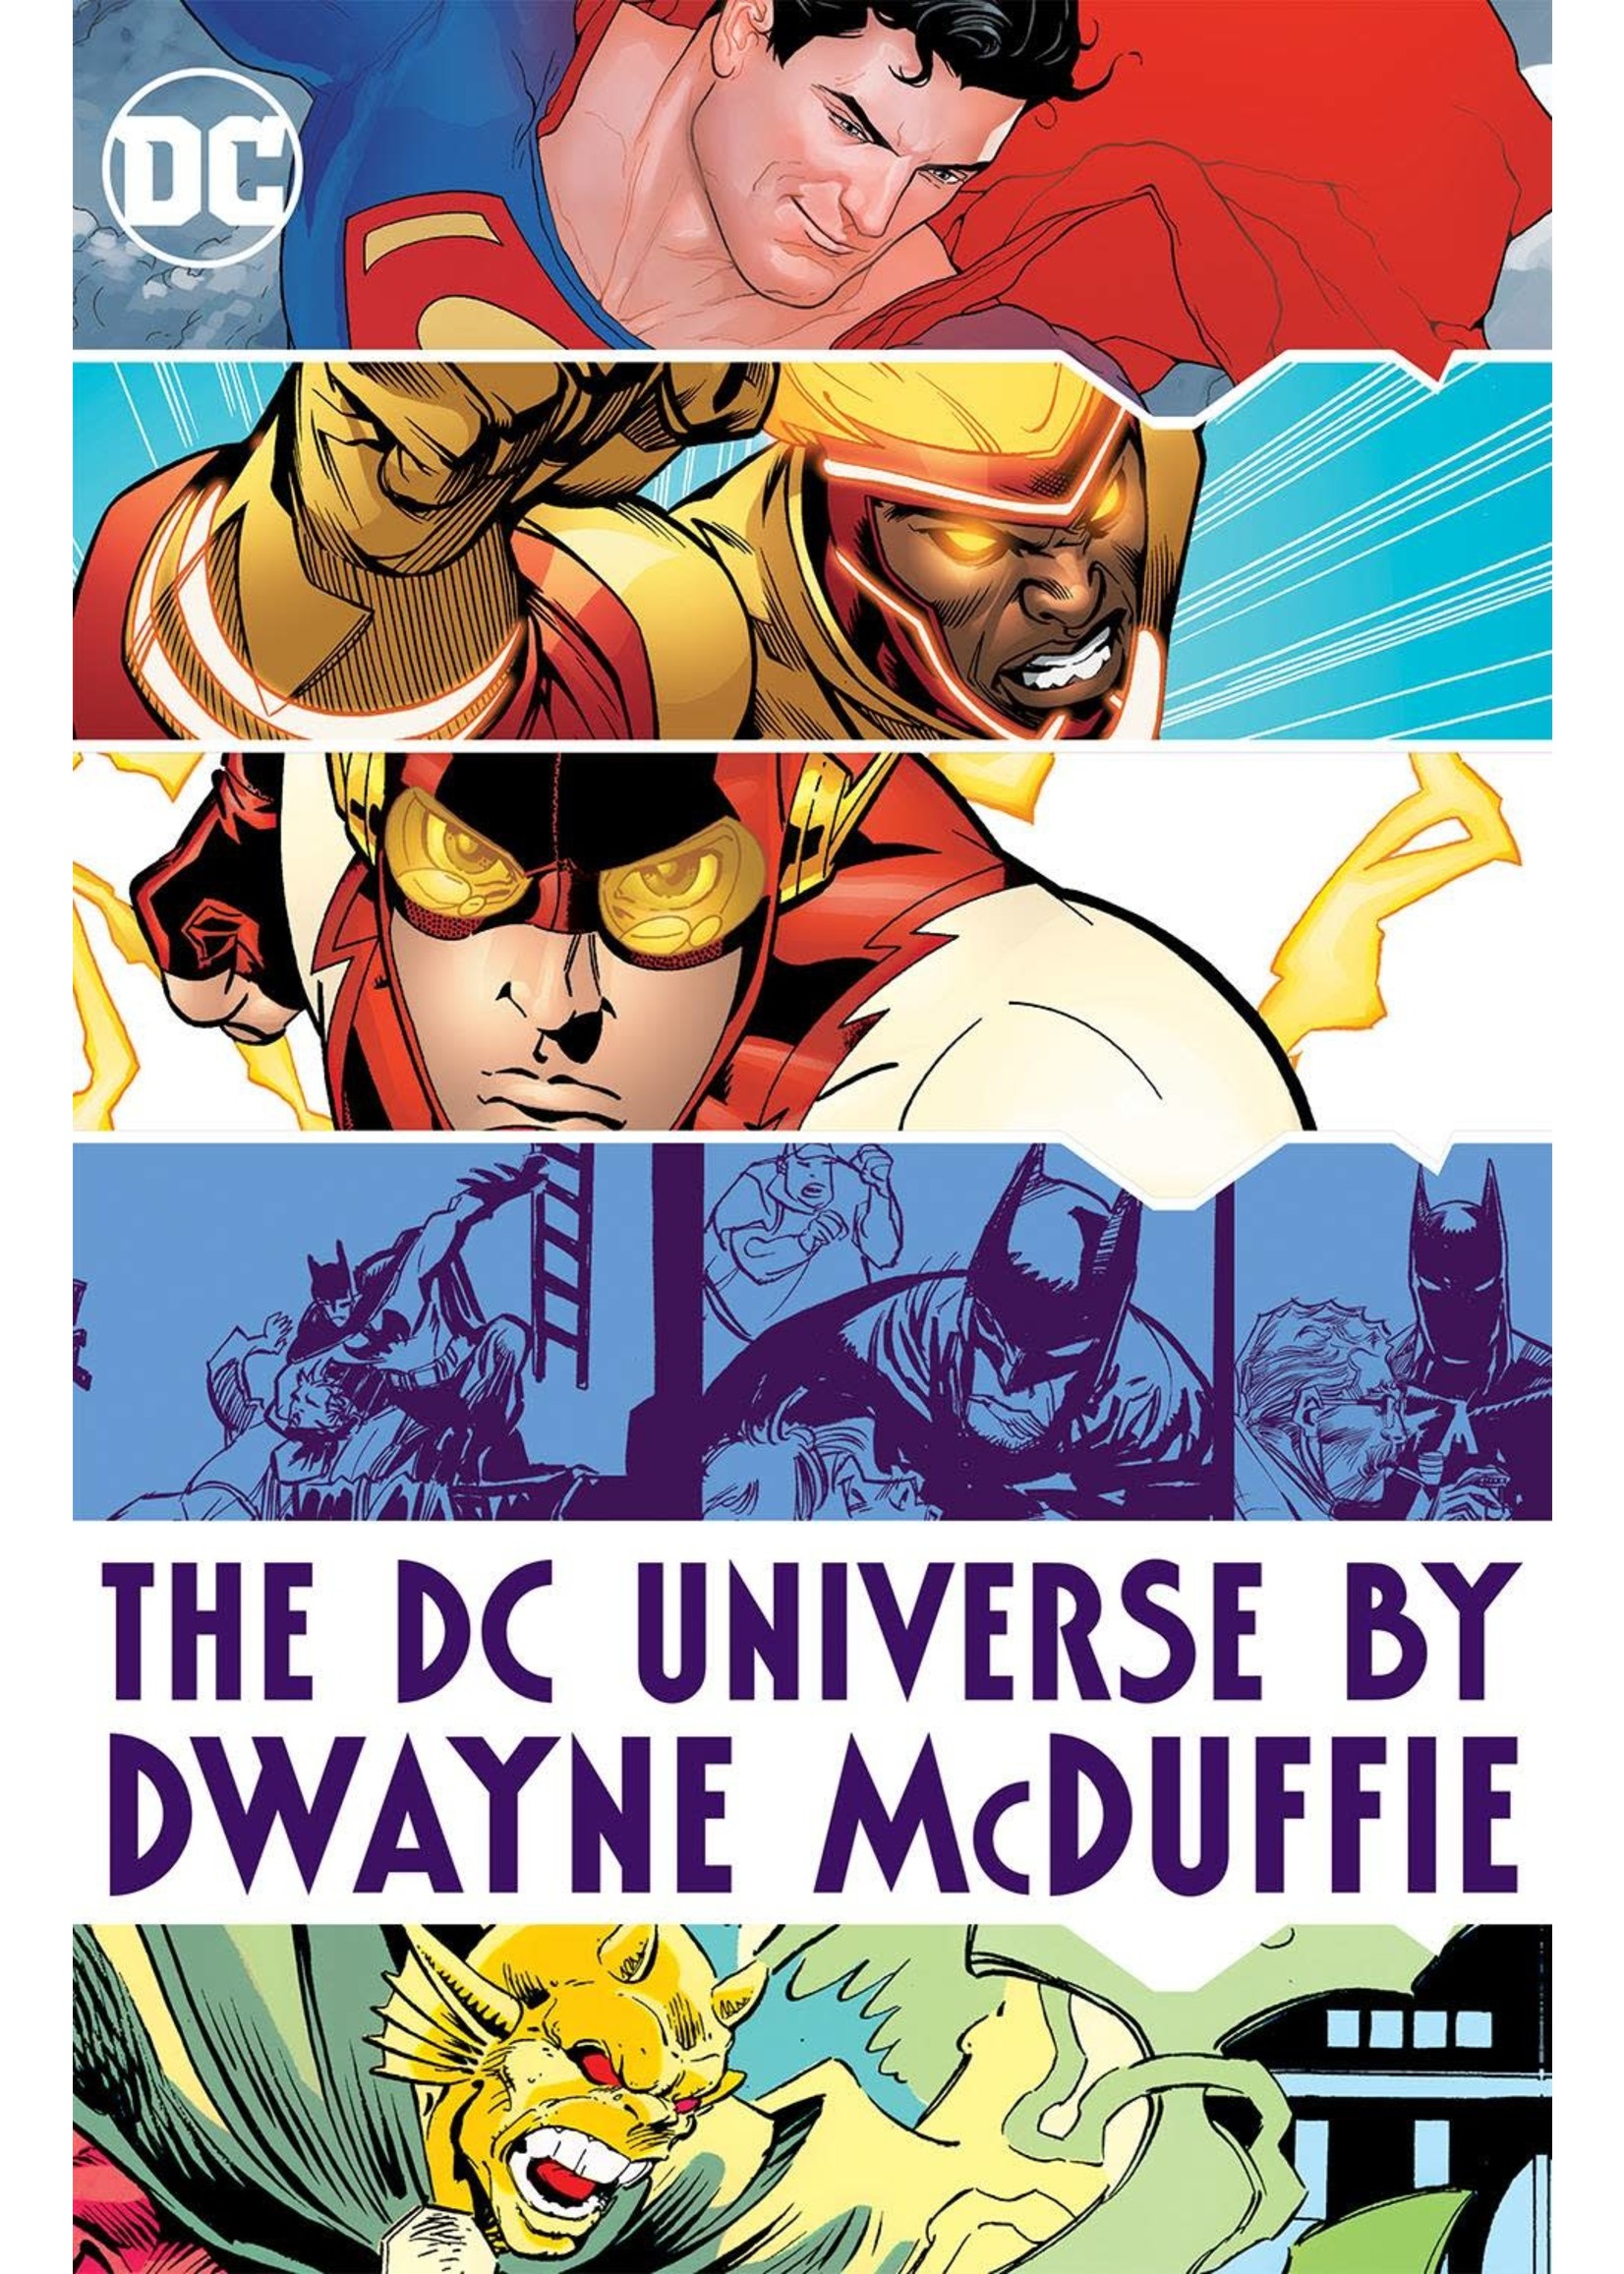 DC COMICS DC UNIVERSE BY DWAYNE MCDUFFIE HC